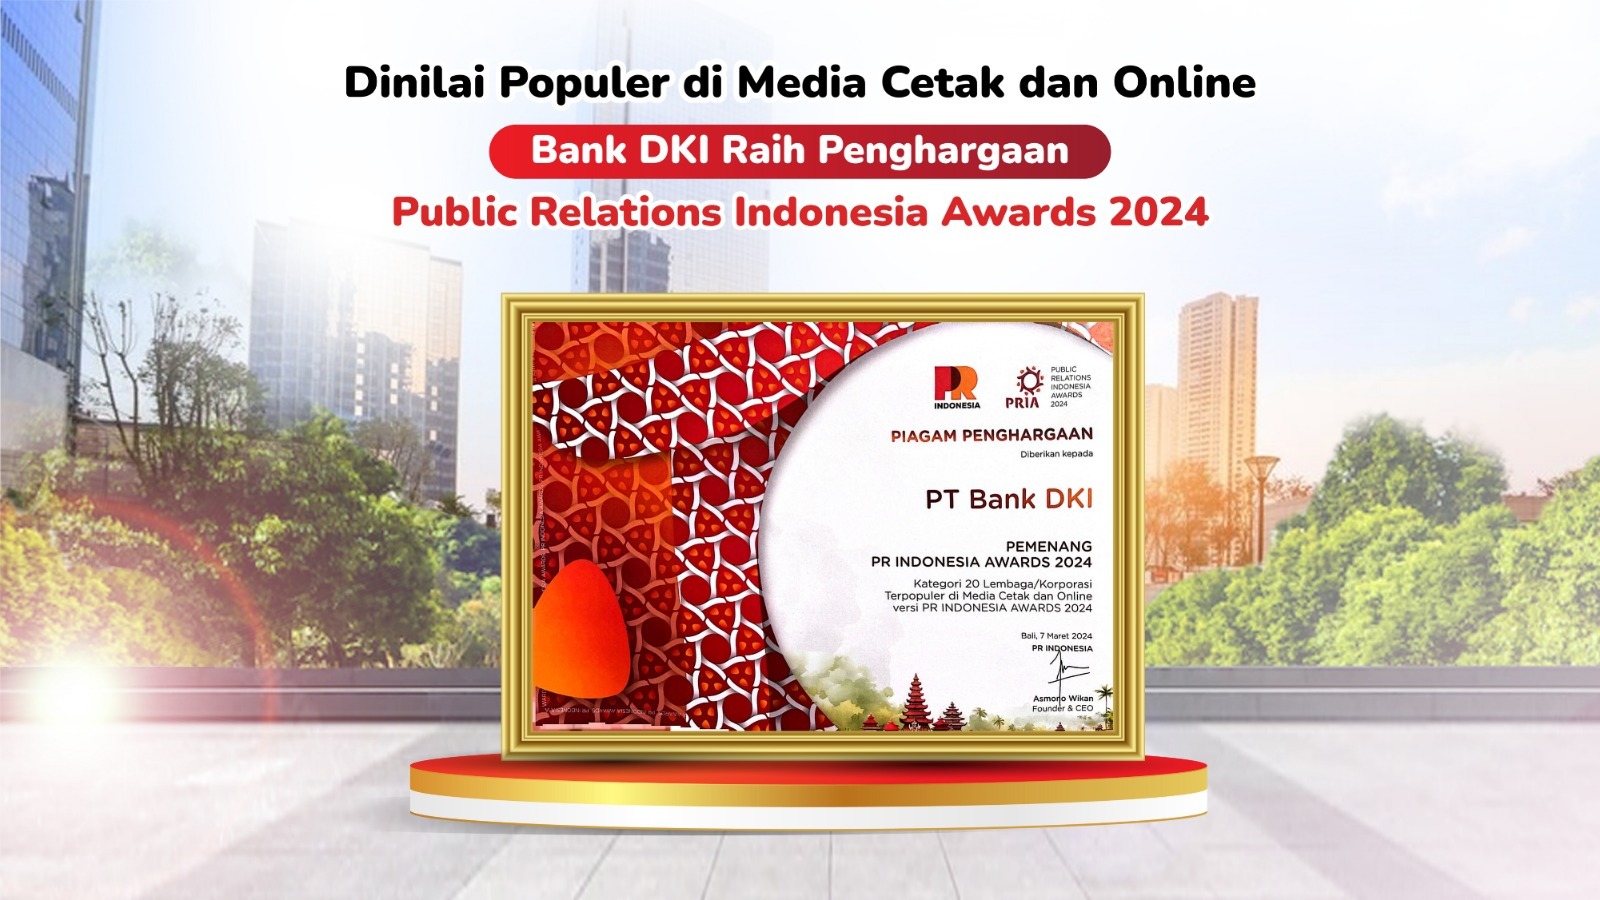 Bank DKI Raih Penghargaan Public Relations Indonesia Awards 2024